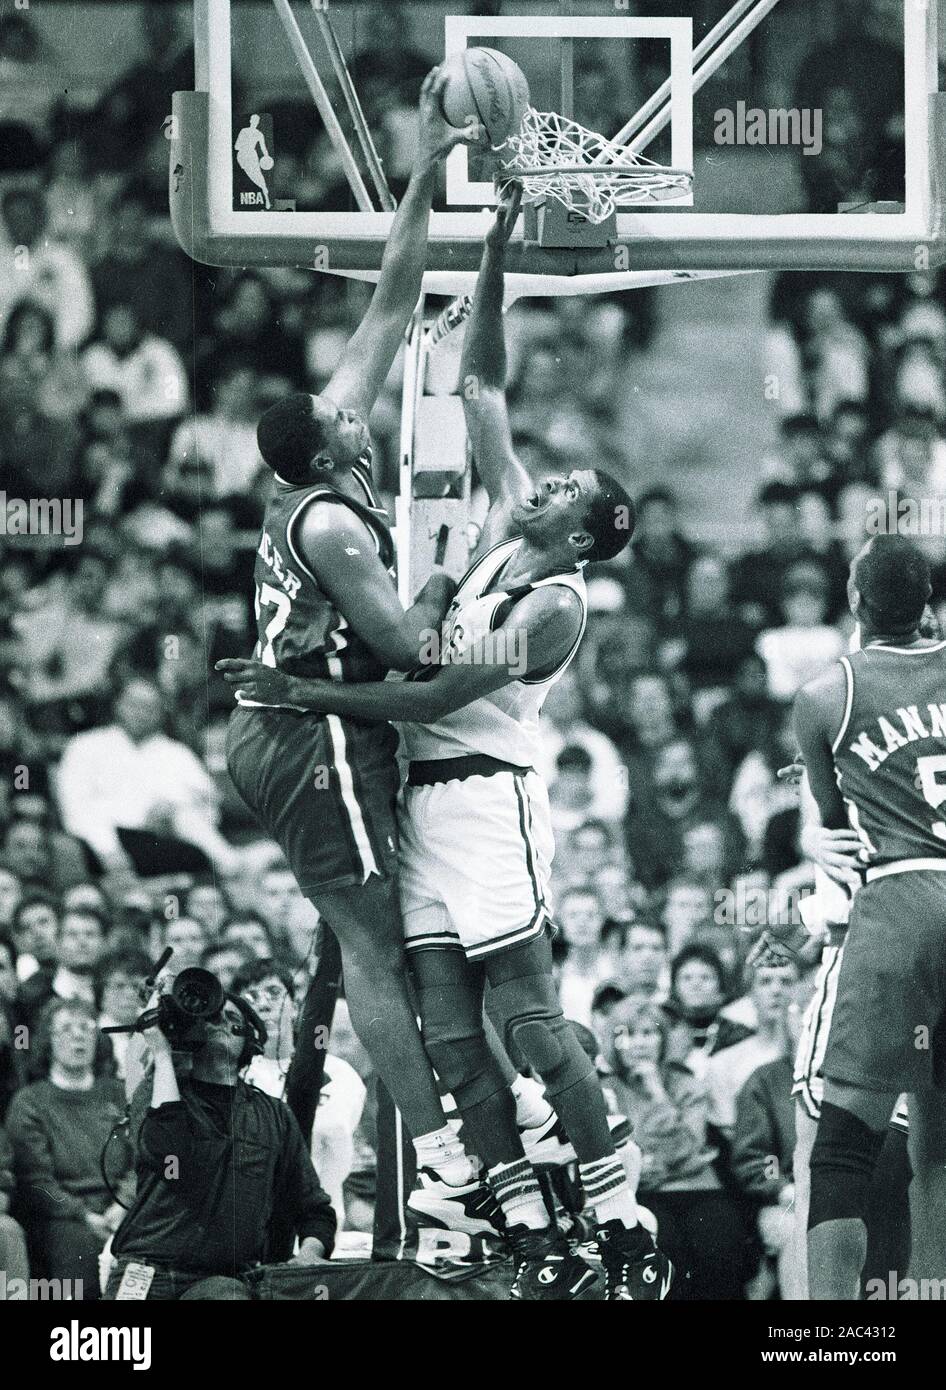 LA Clippers #27 Elmore Spencer Versuche zur Kerbe auf Boston Celtics Robert Parish im Basketball spiel action im Fleet Center in Boston, Ma USA Foto von Bill belknap Stockfoto